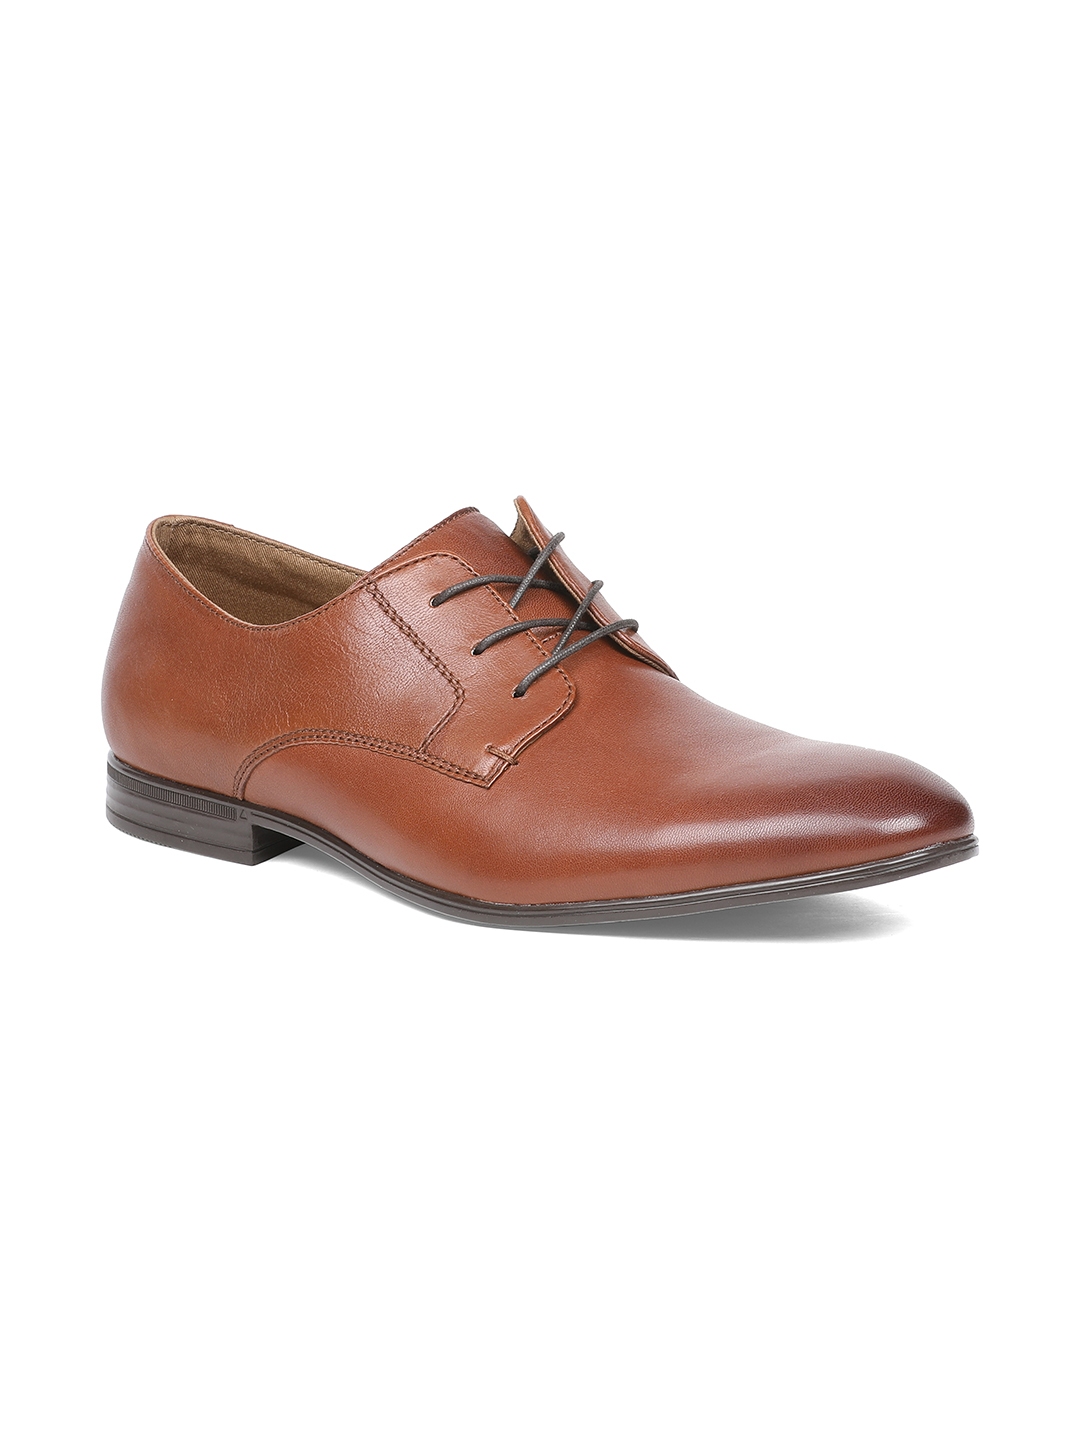 Buy ALDO Men Brown Leather Formal Derbys - Formal Shoes for Men 8932165 ...